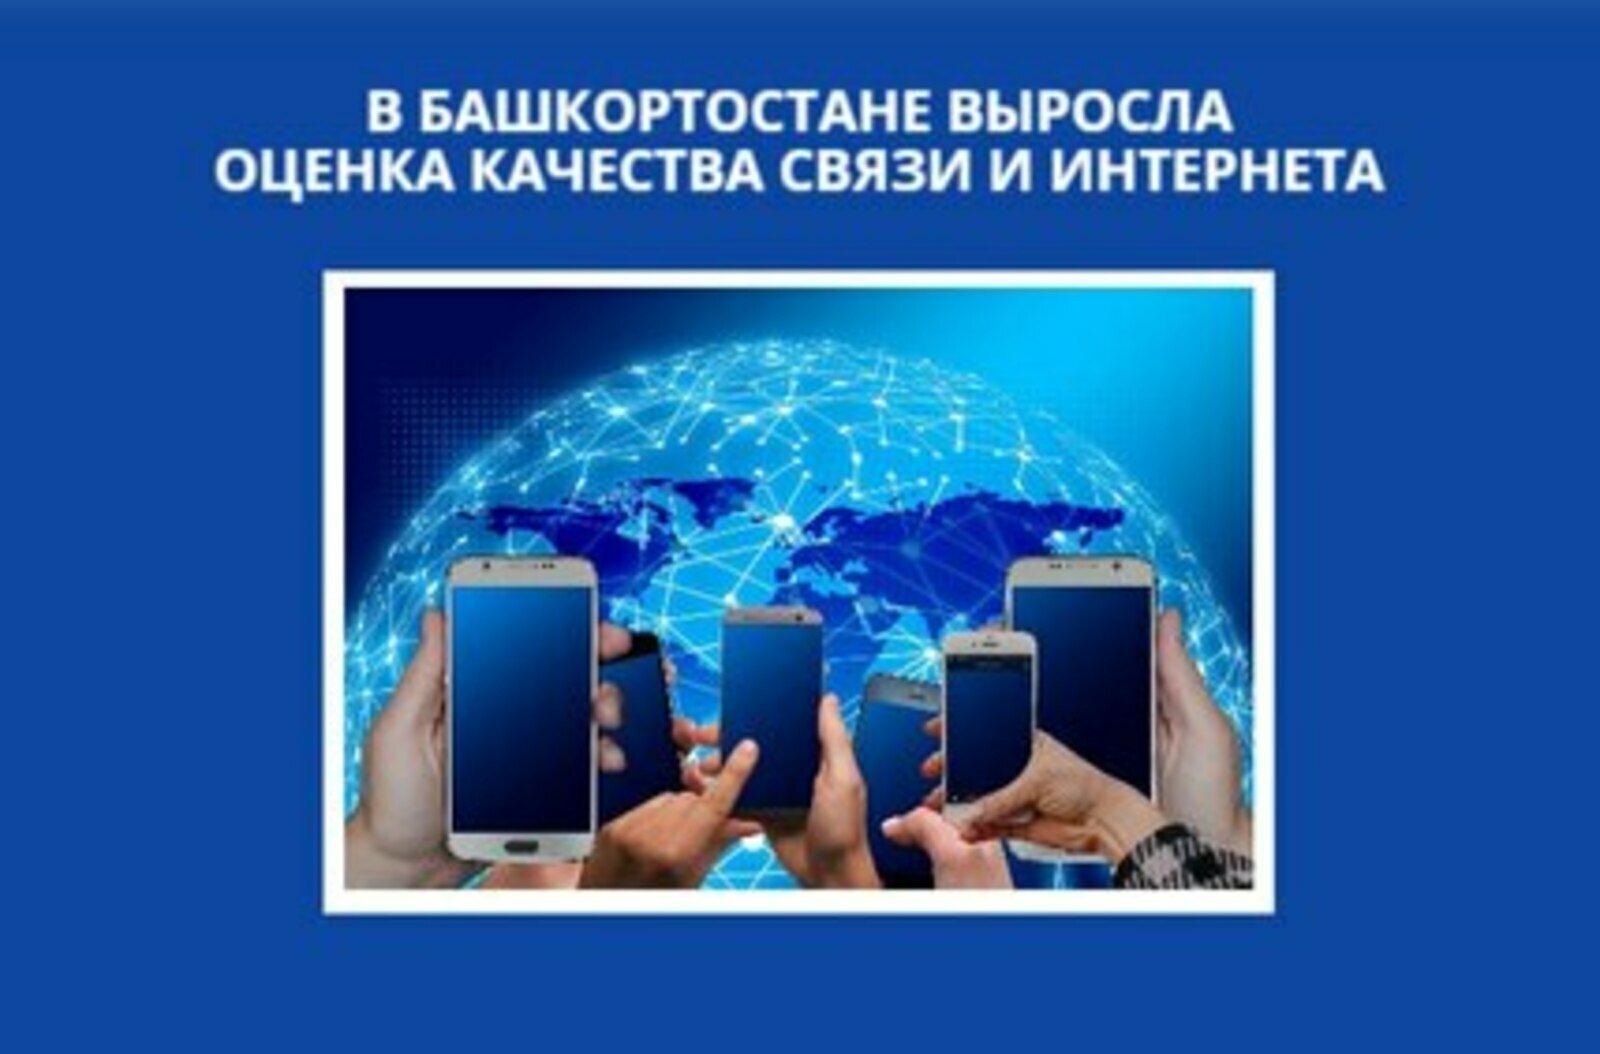 В Башкортостане выросла оценка качества связи и интернета